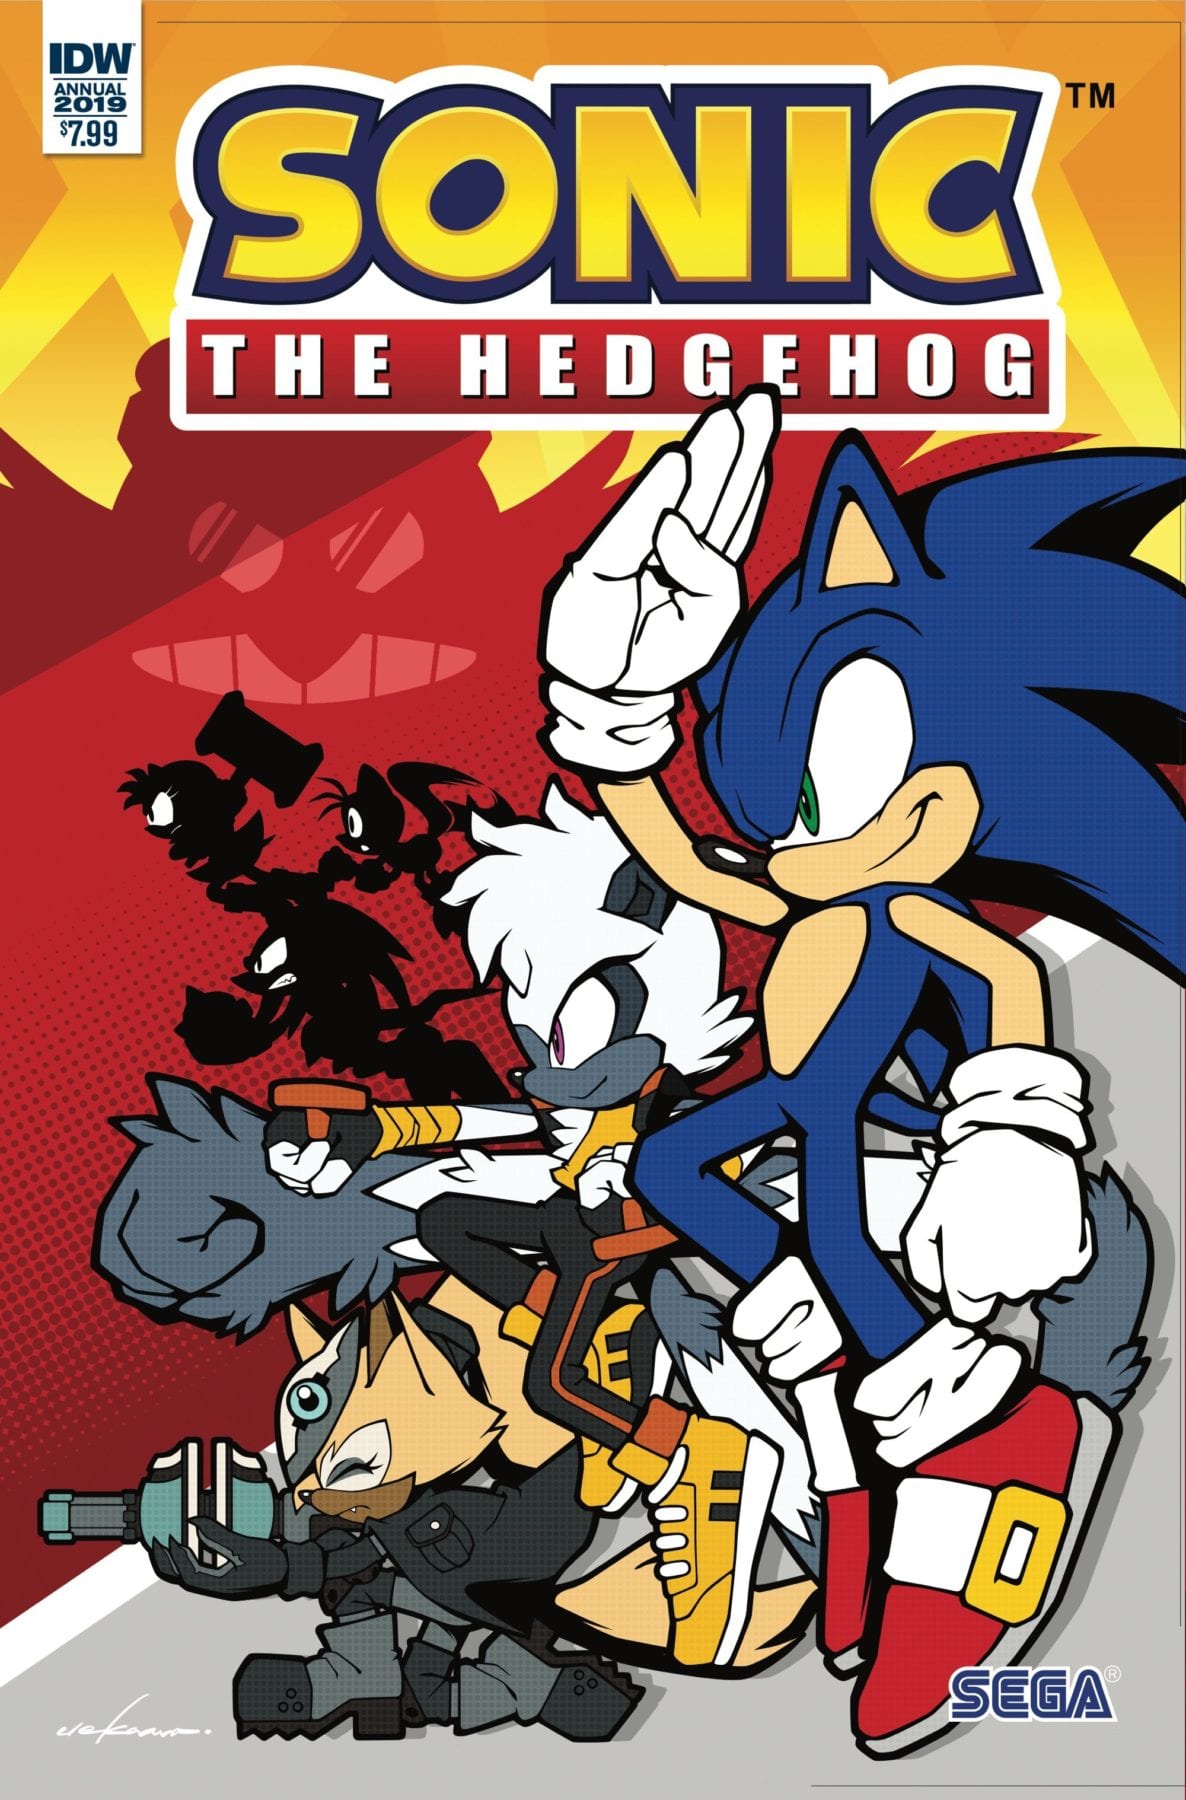 IDW anuncia el Sonic the Hedgehog Annual 2019